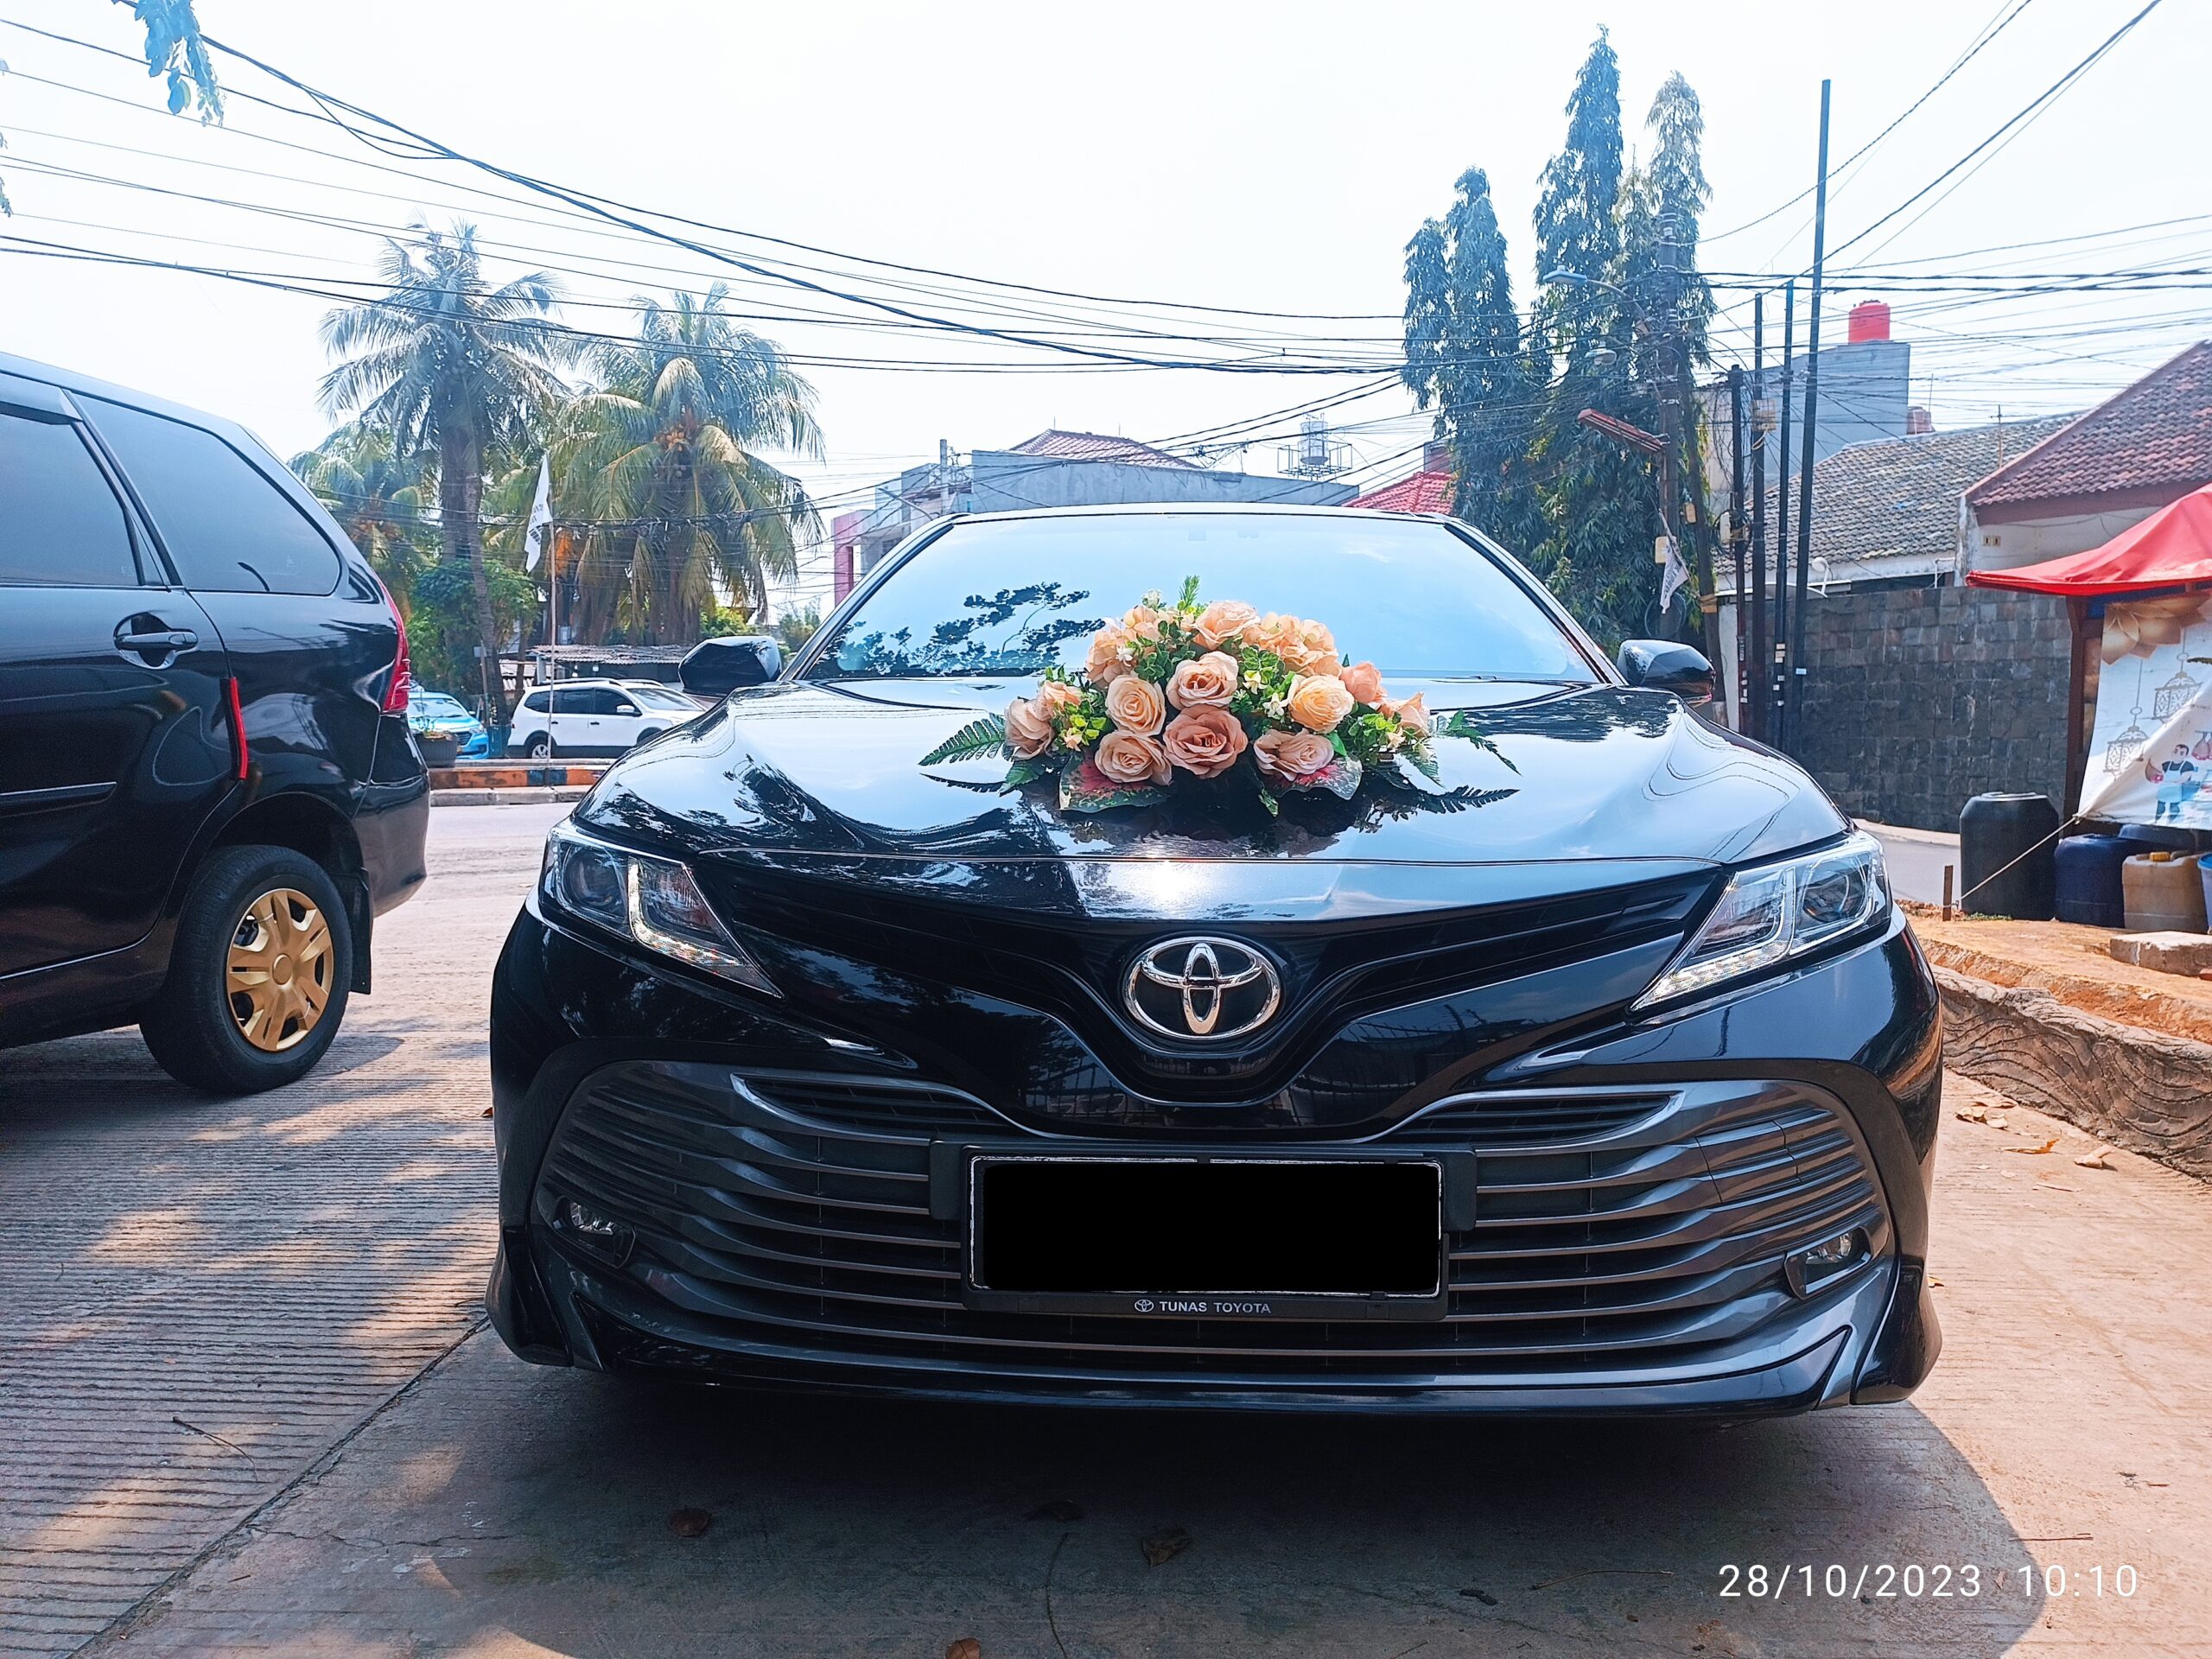 Read more about the article Sewa Mobil Pengantin Murah di Jakarta